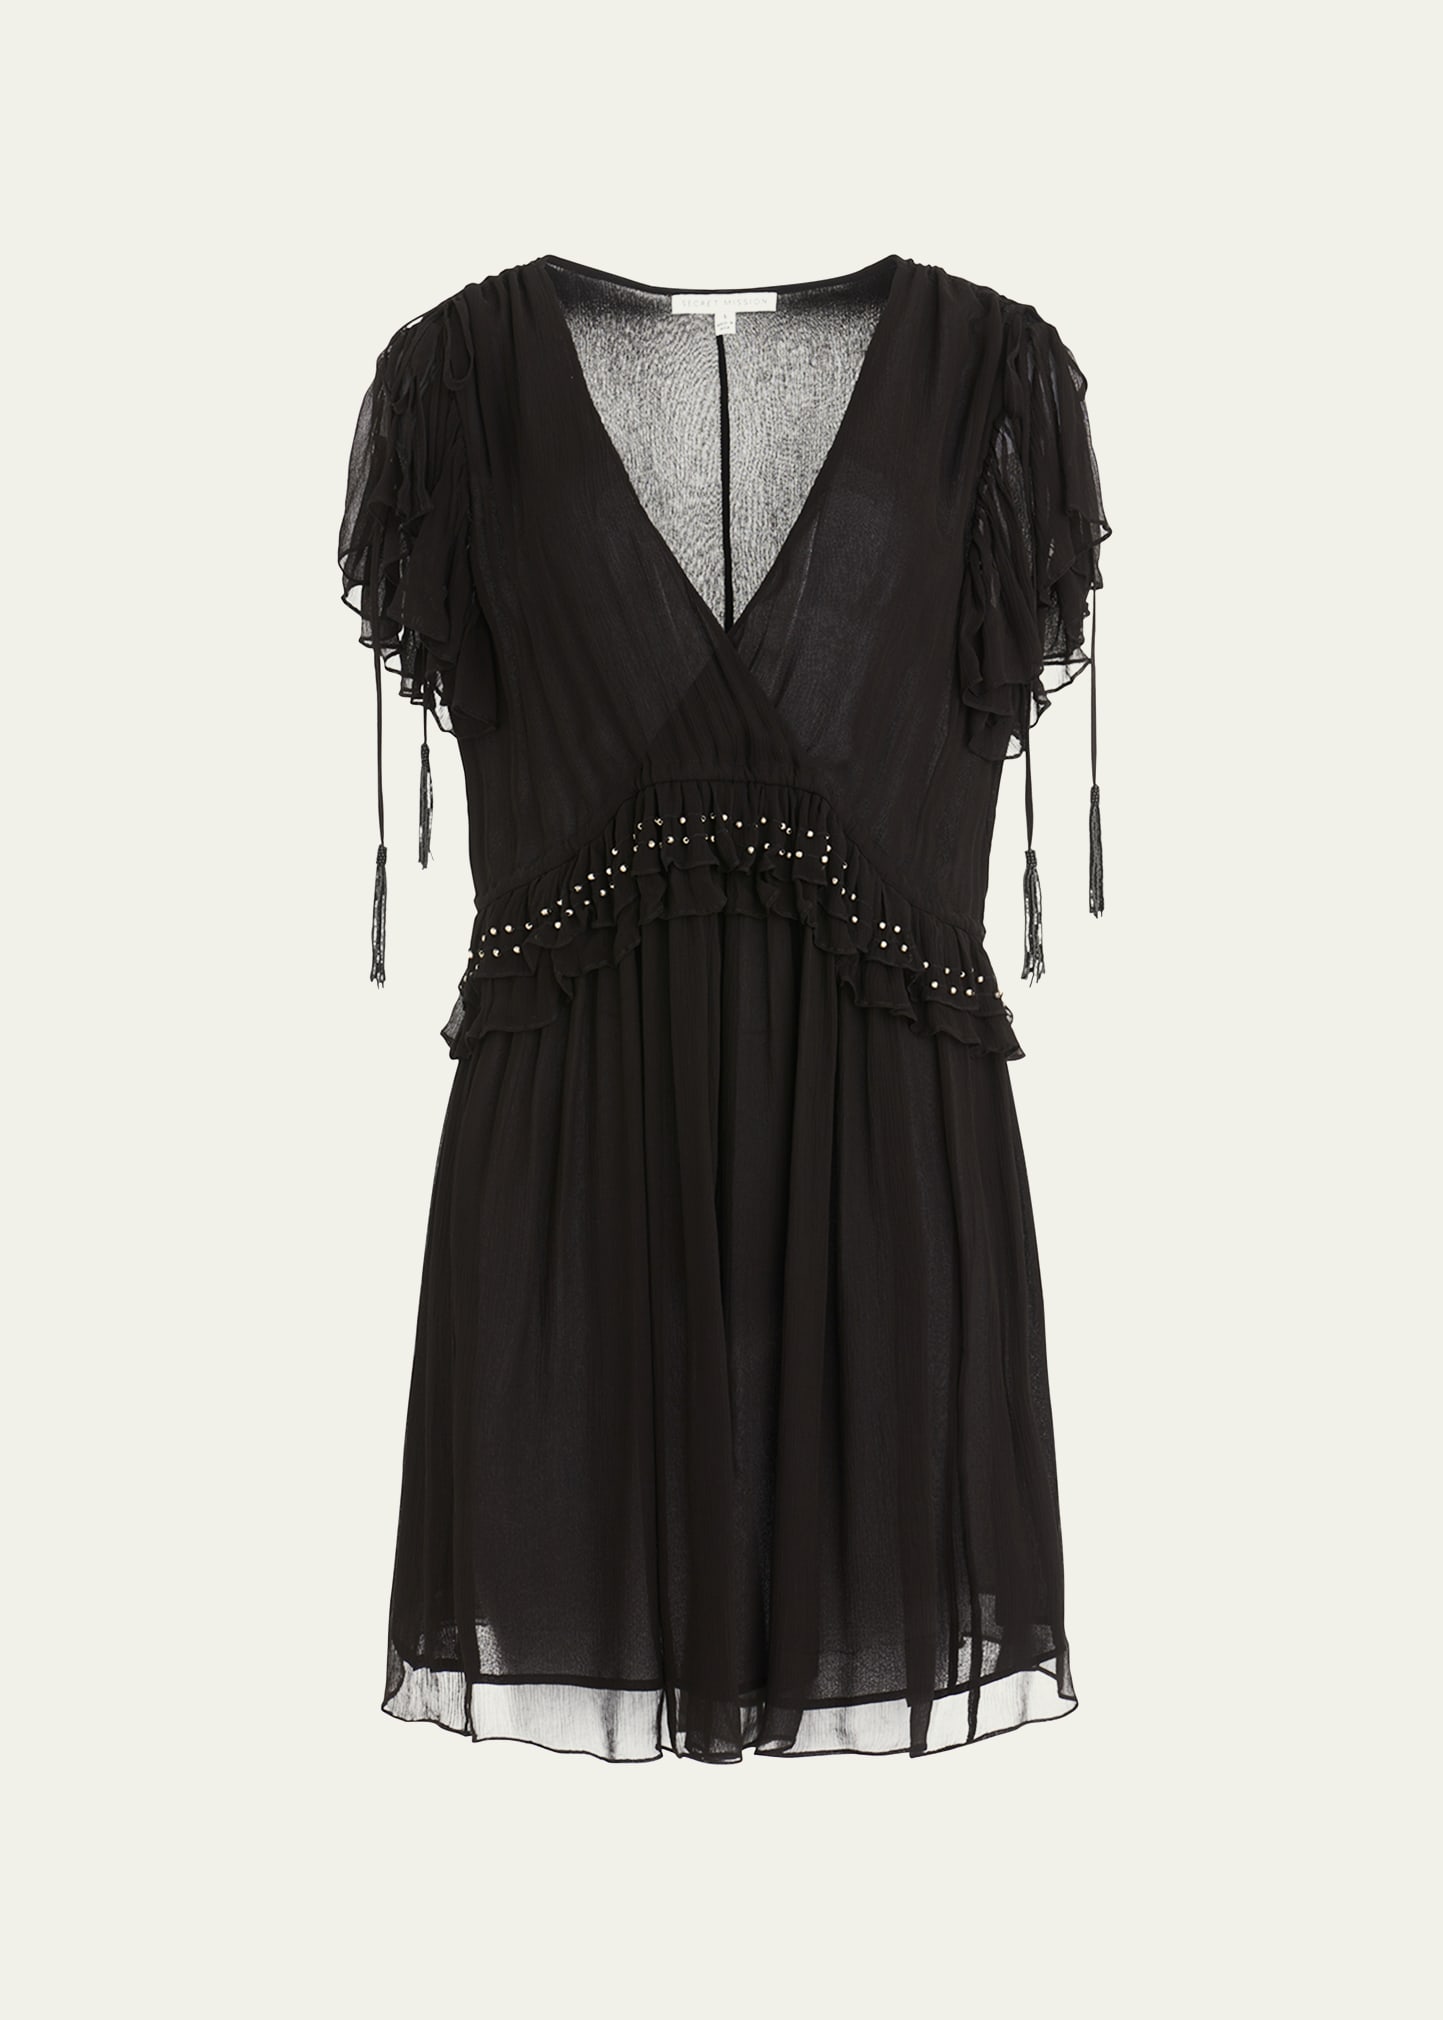 Camille Flutter-Sleeve Mini Dress